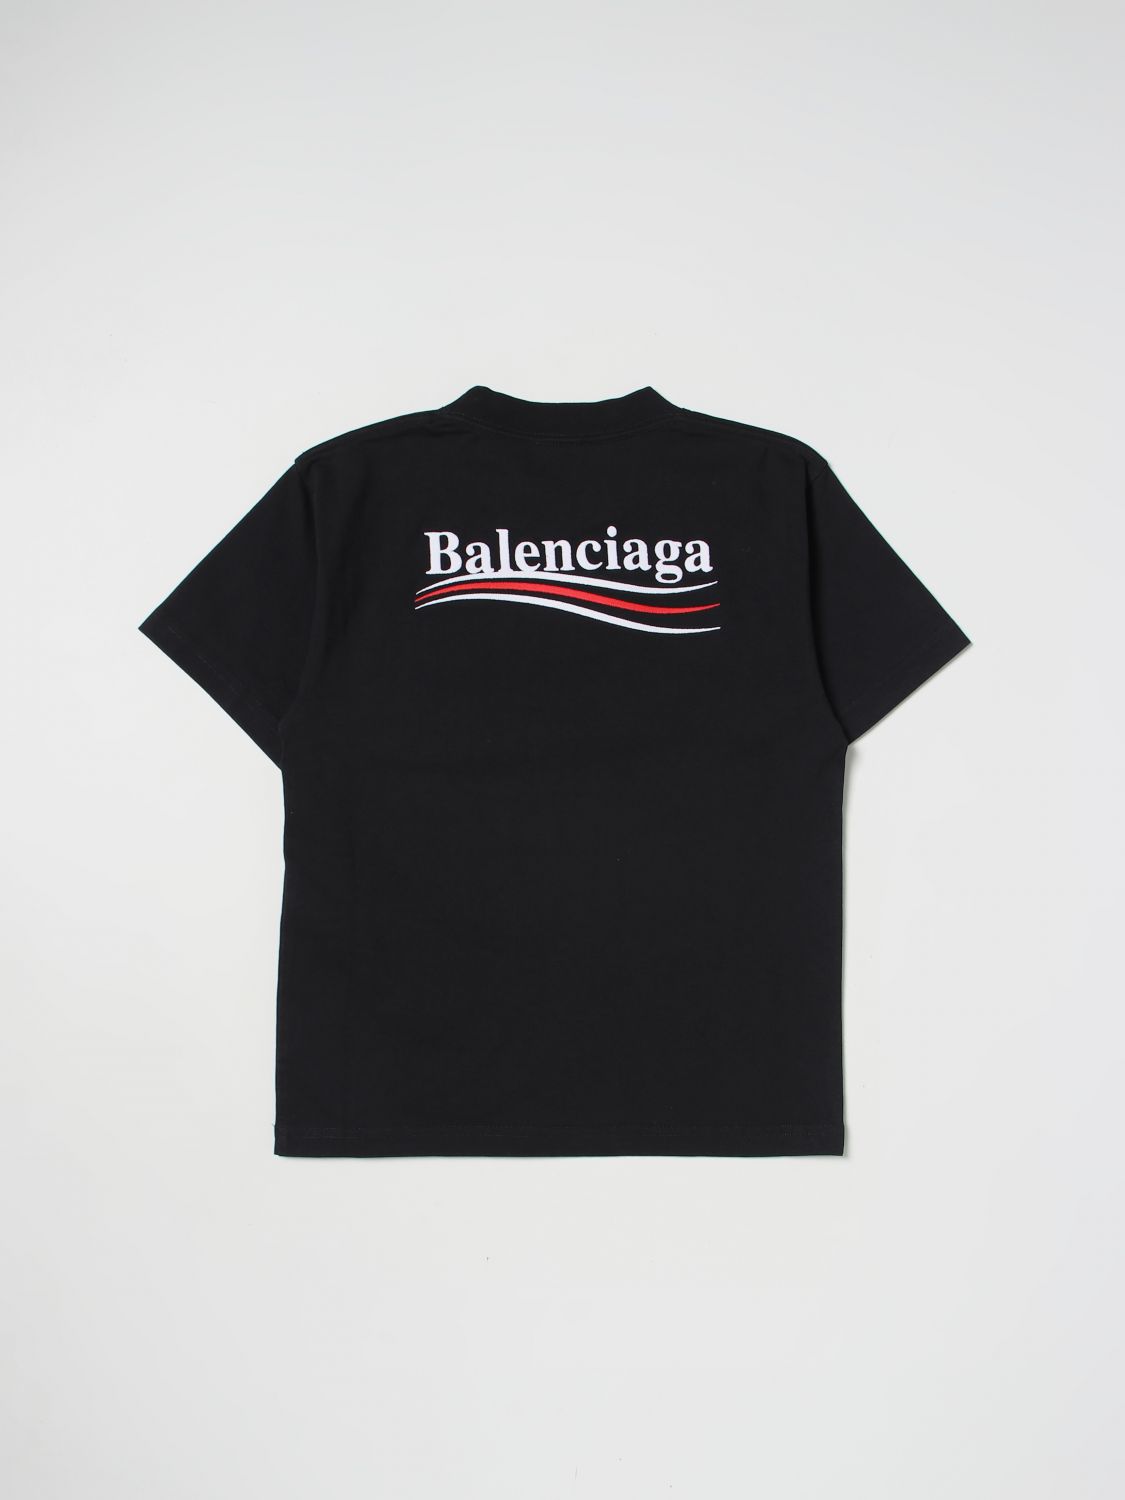 BALENCIAGA: t-shirt for boys - Black | Balenciaga t-shirt 681864TMVE7 ...